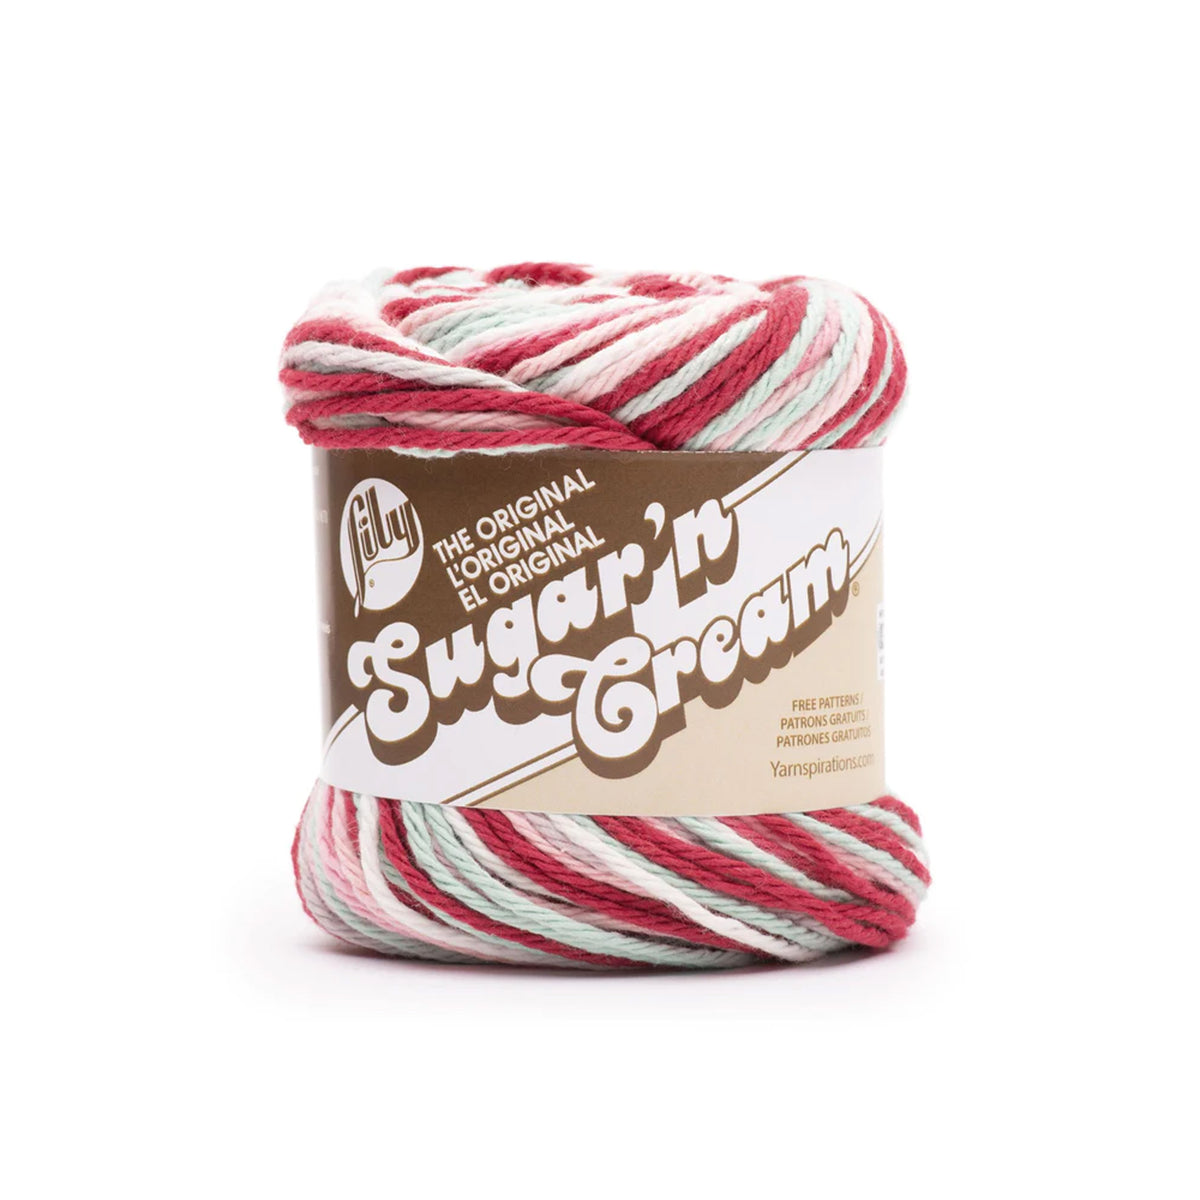 Bernat Sugar'n Cream Cotton Yarn - Red